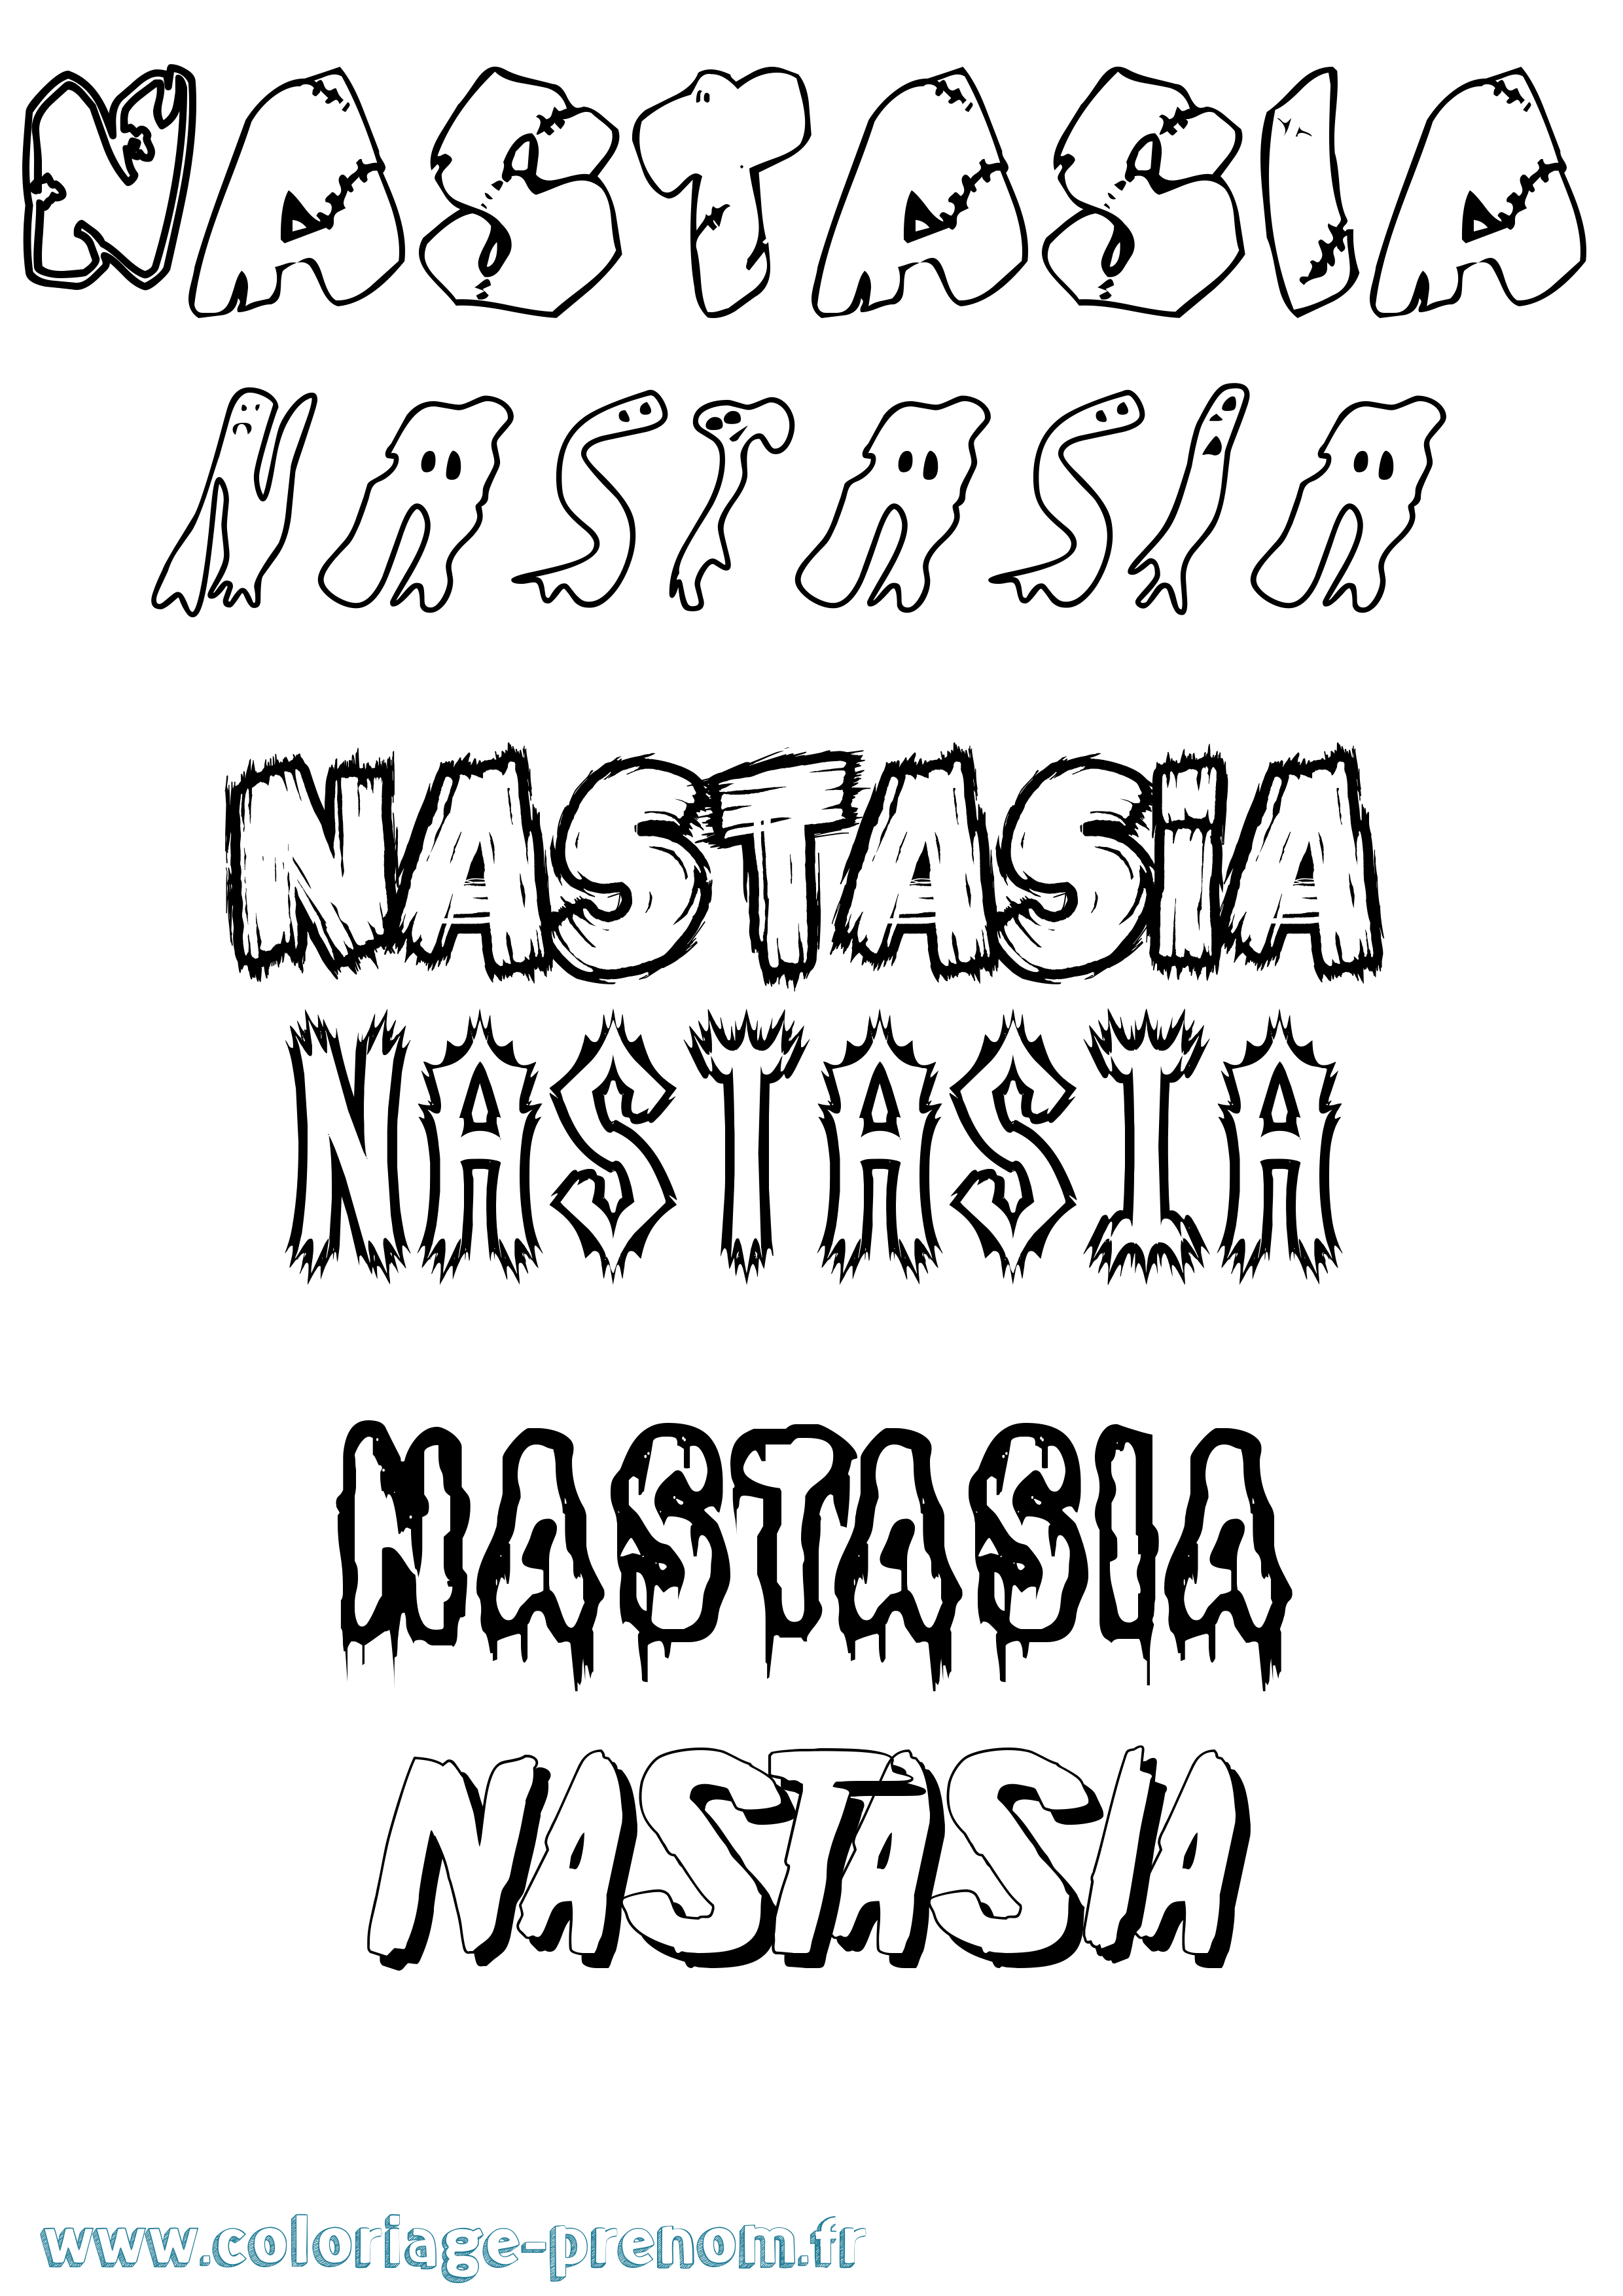 Coloriage prénom Nastasia Frisson